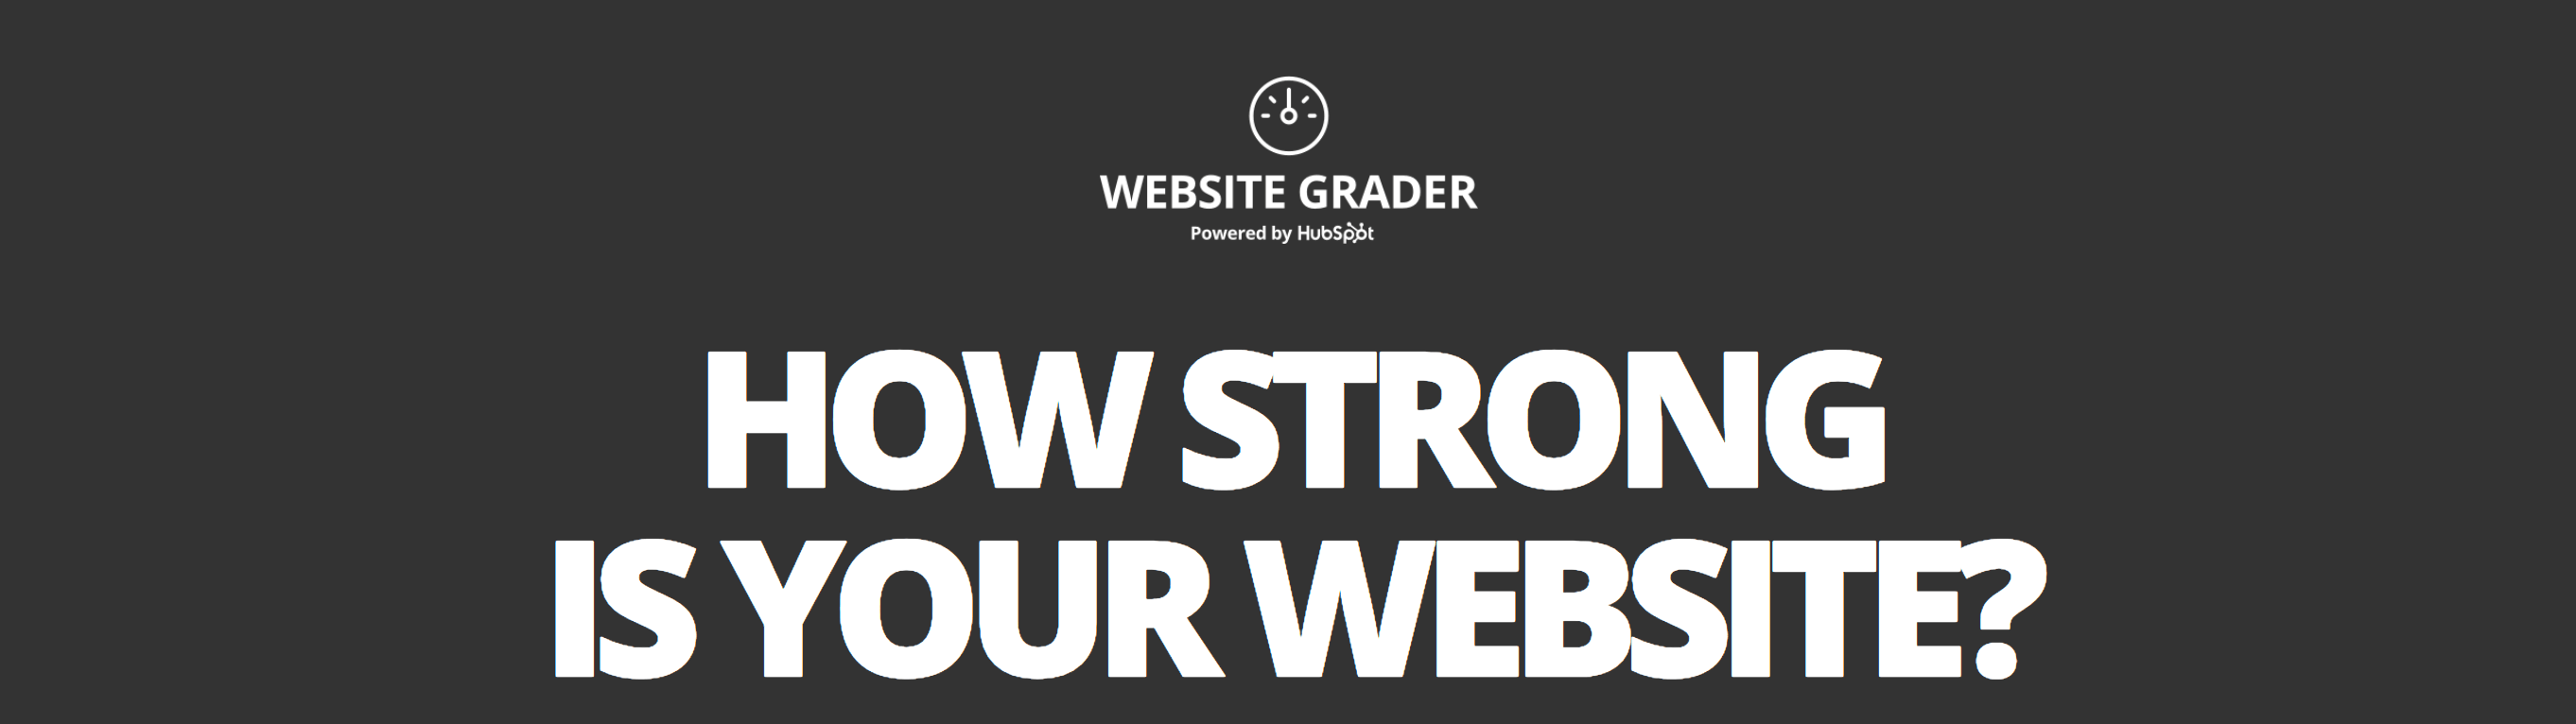 website-grader